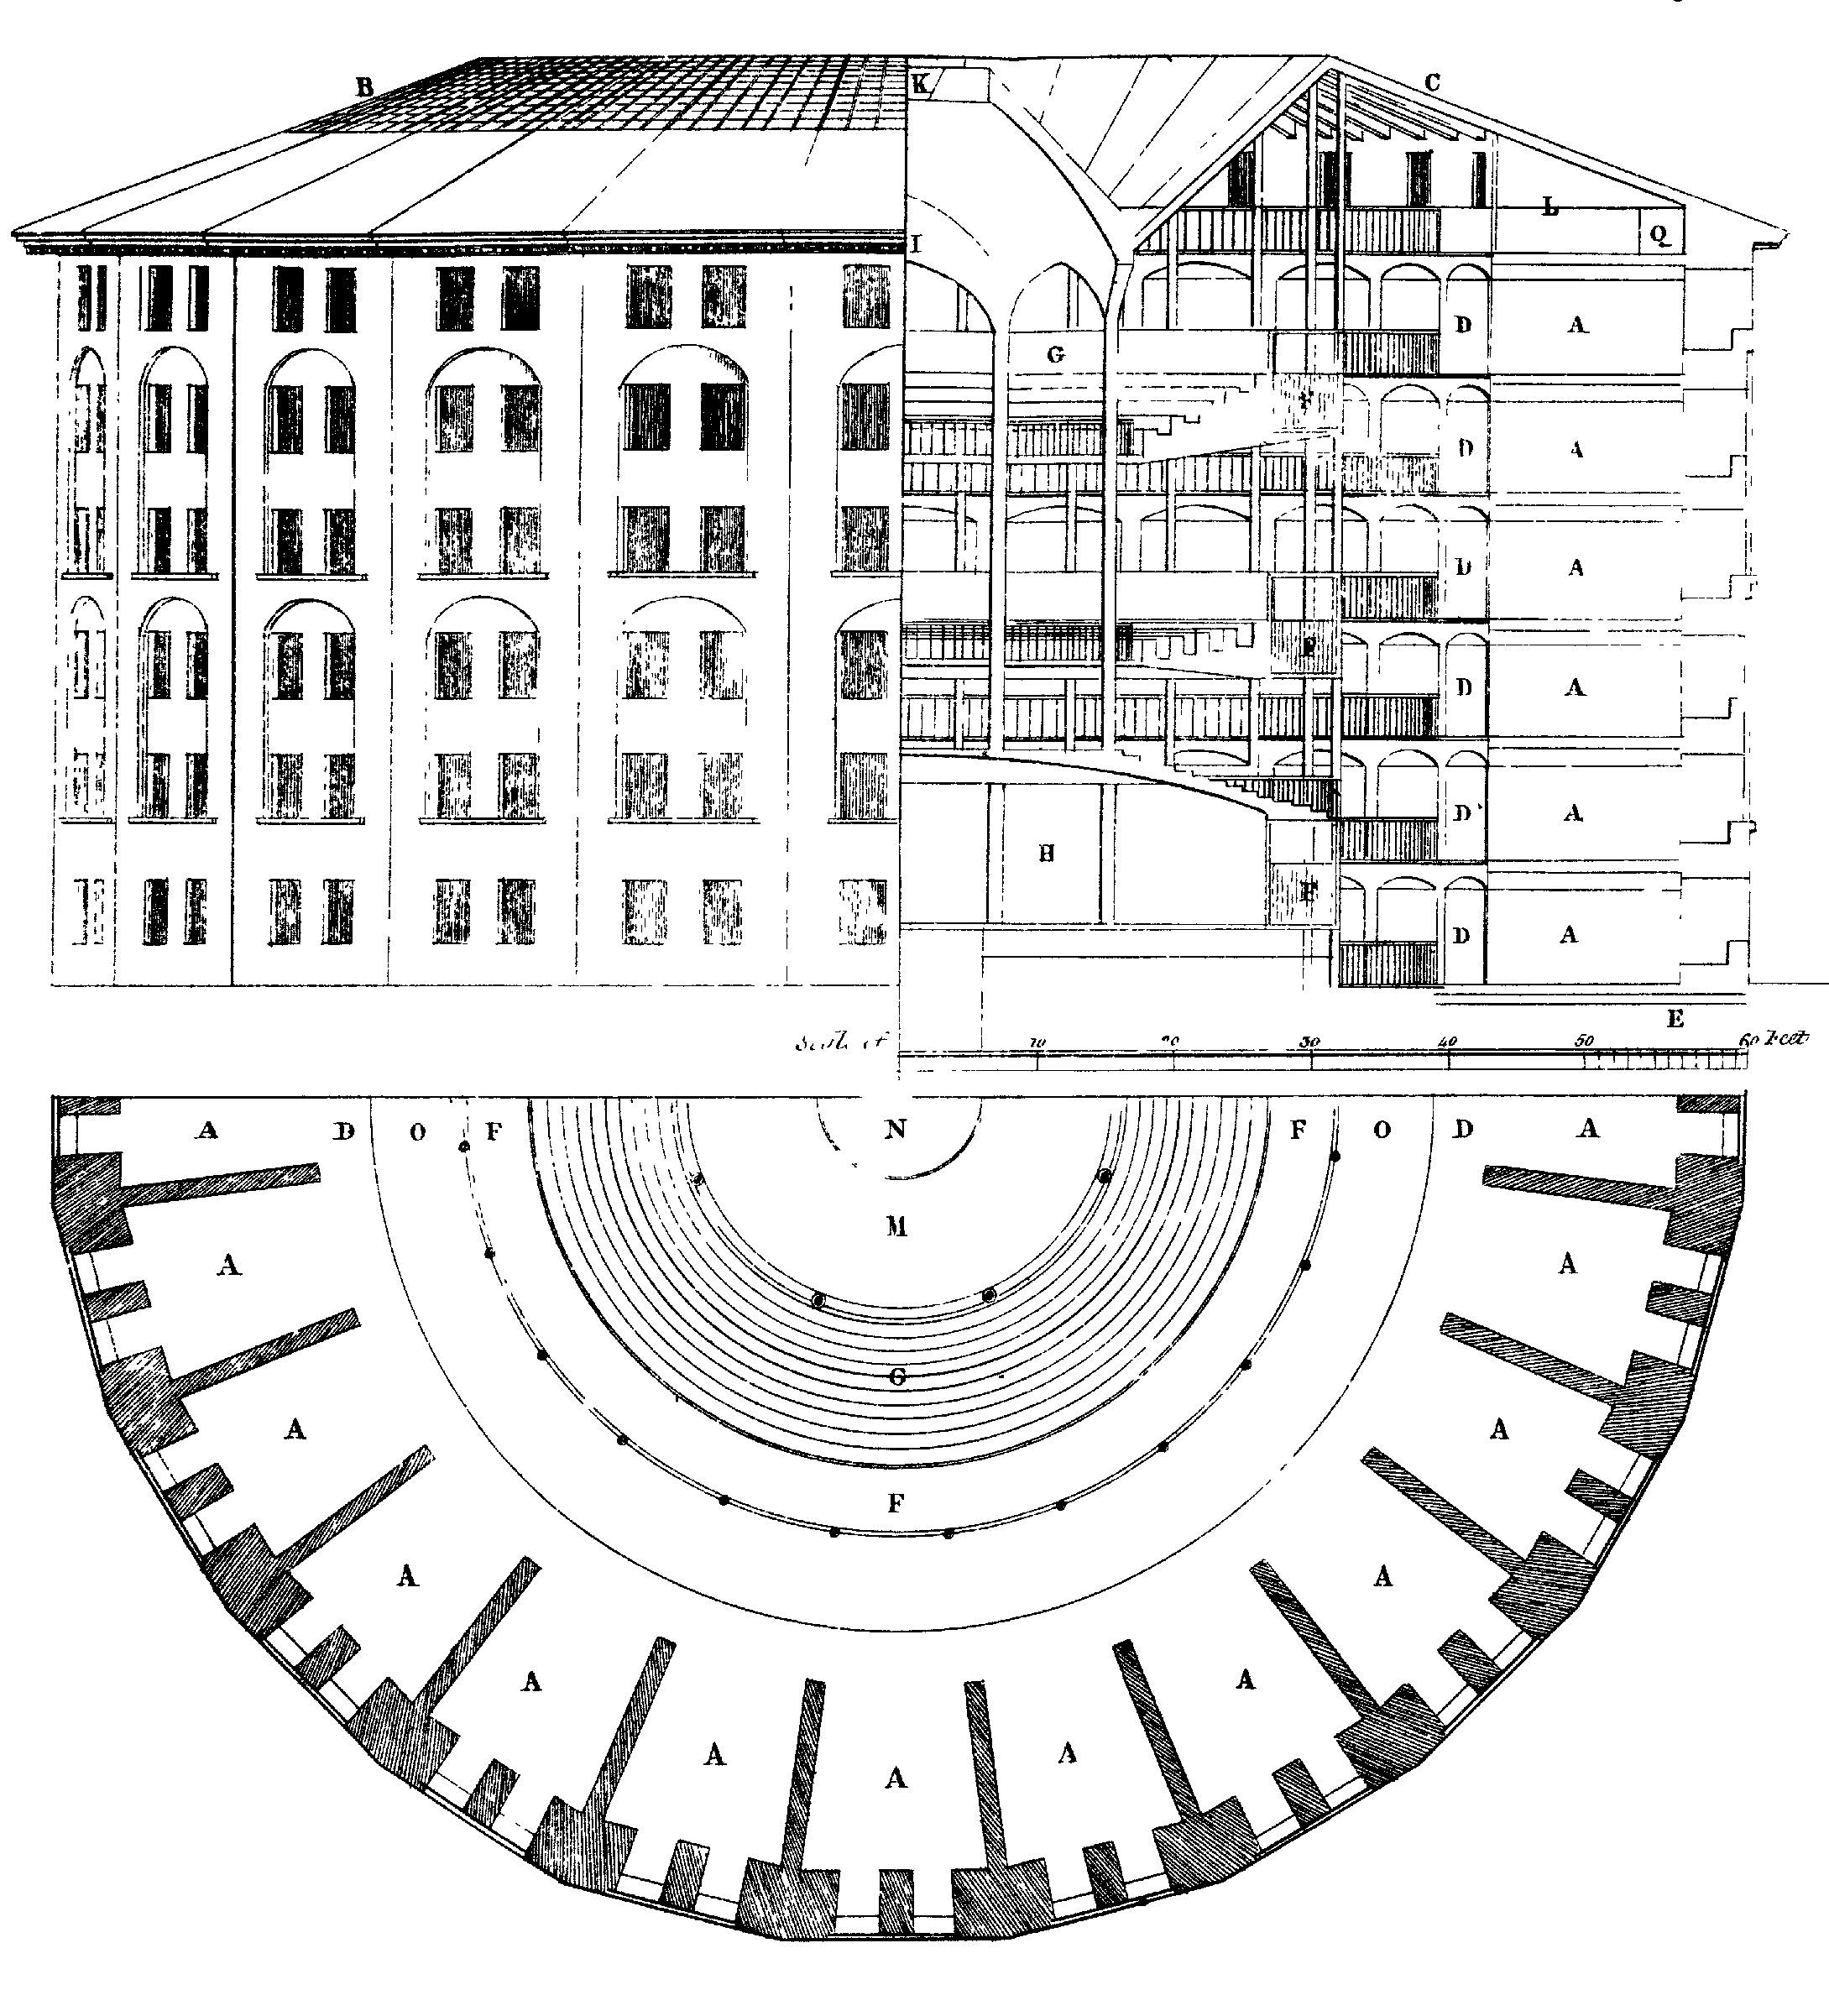 Kuva 6.3: design Panopticon vankilasta, ehdotti ensimmäisenä Jeremy Bentham. Keskustassa on näkymätön näkijä, joka voi tarkkailla käyttäytymistä kaikille ja ei voida havaita. Piirustus by Willey Reveley, 1791. Lähde: Wikimedia Commons.